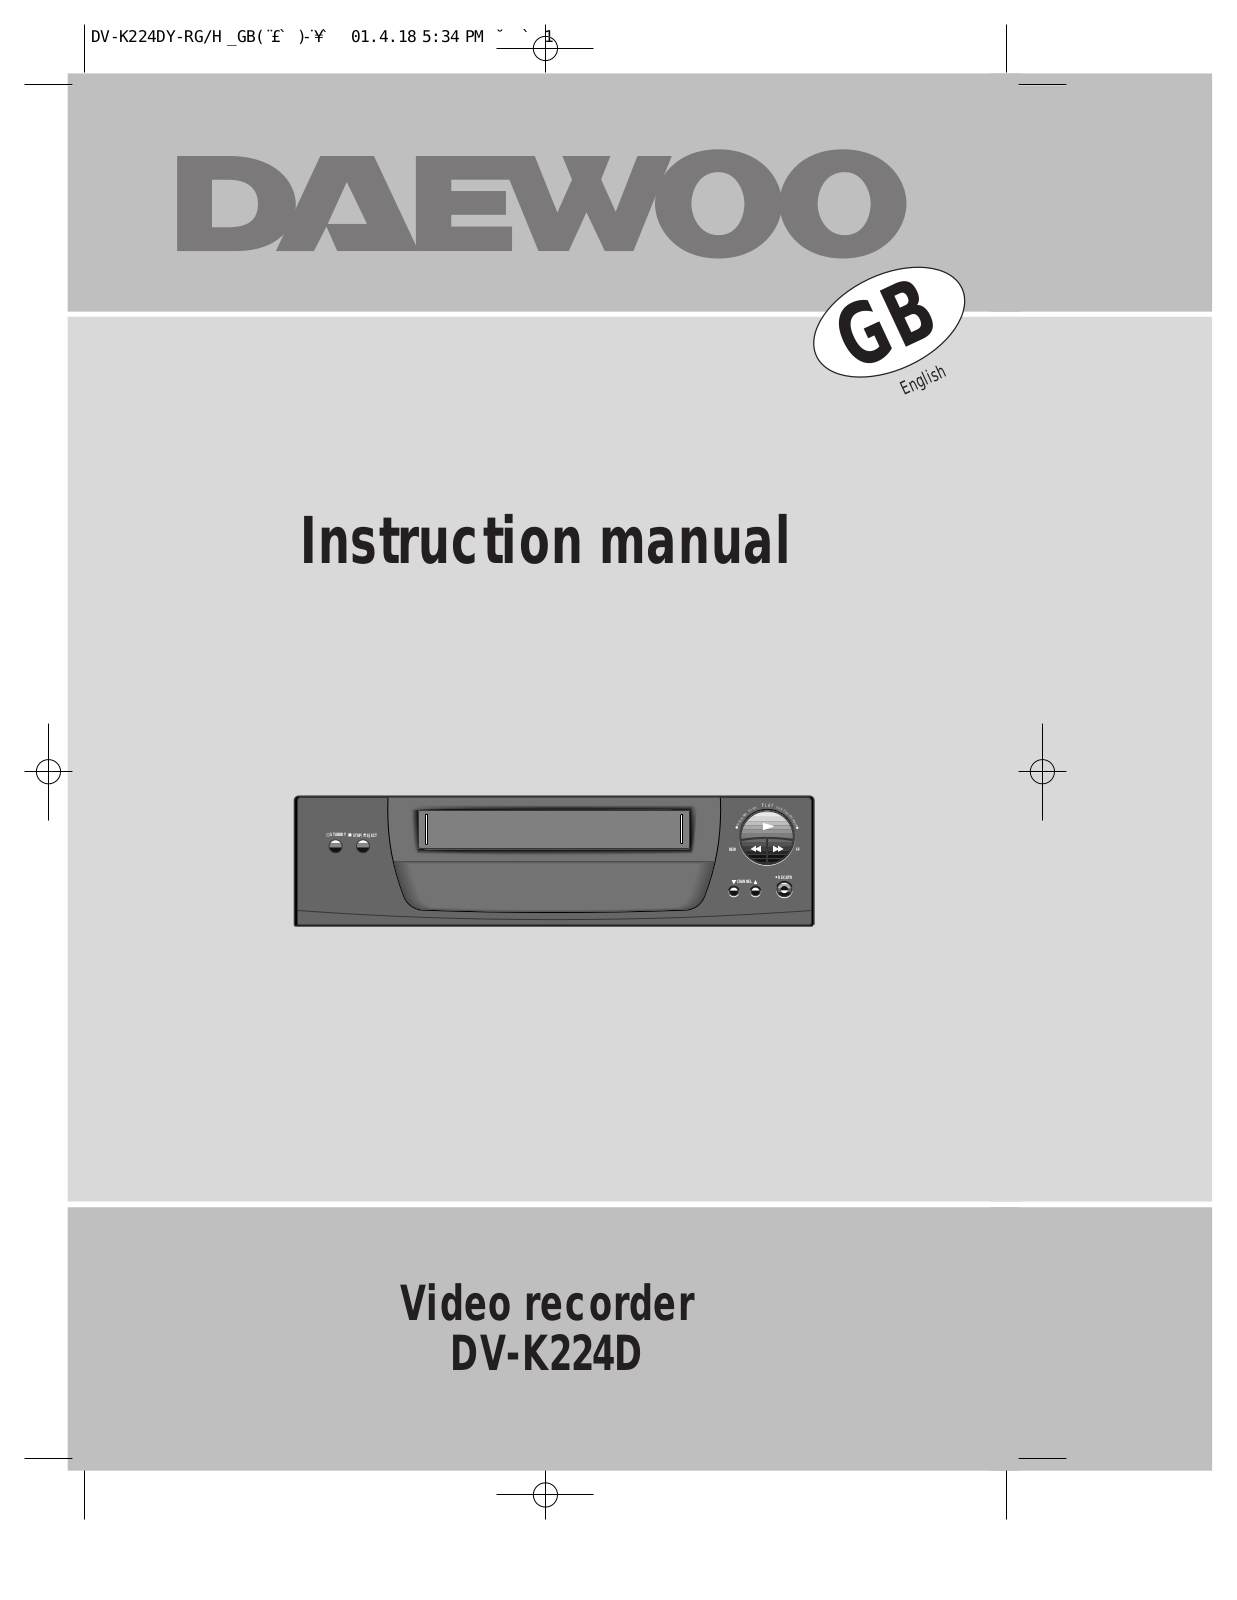 Daewoo DV-K224D User Manual